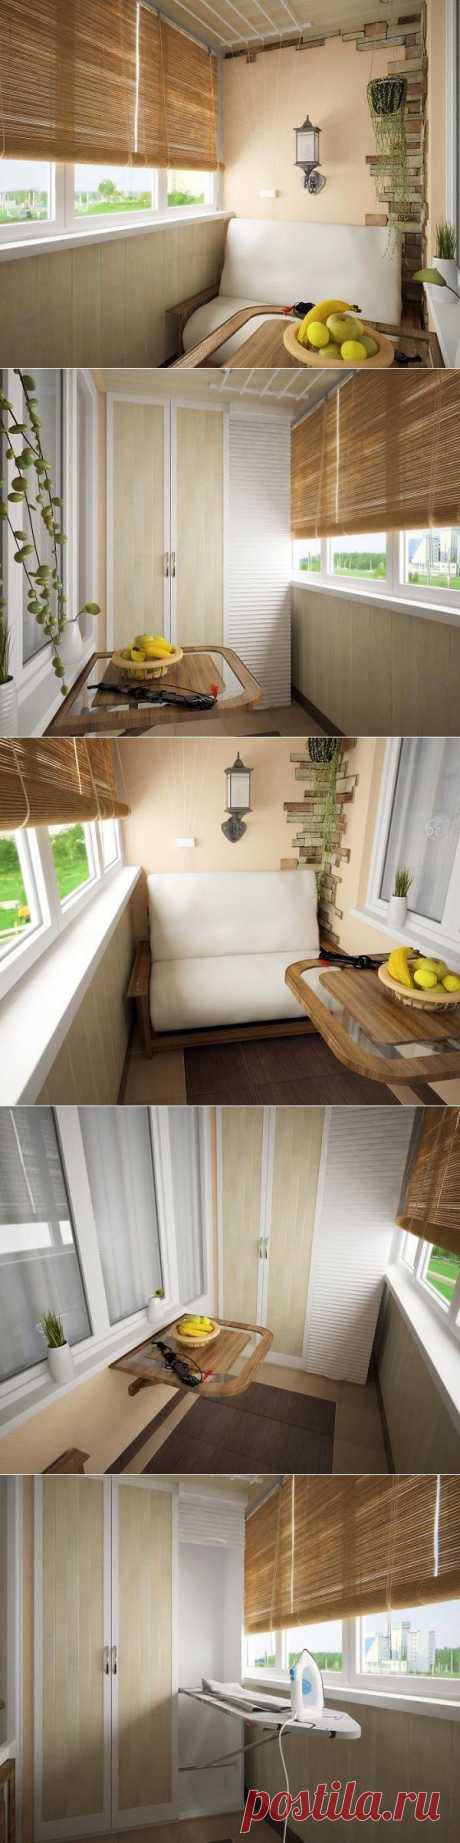 Идея для балкона